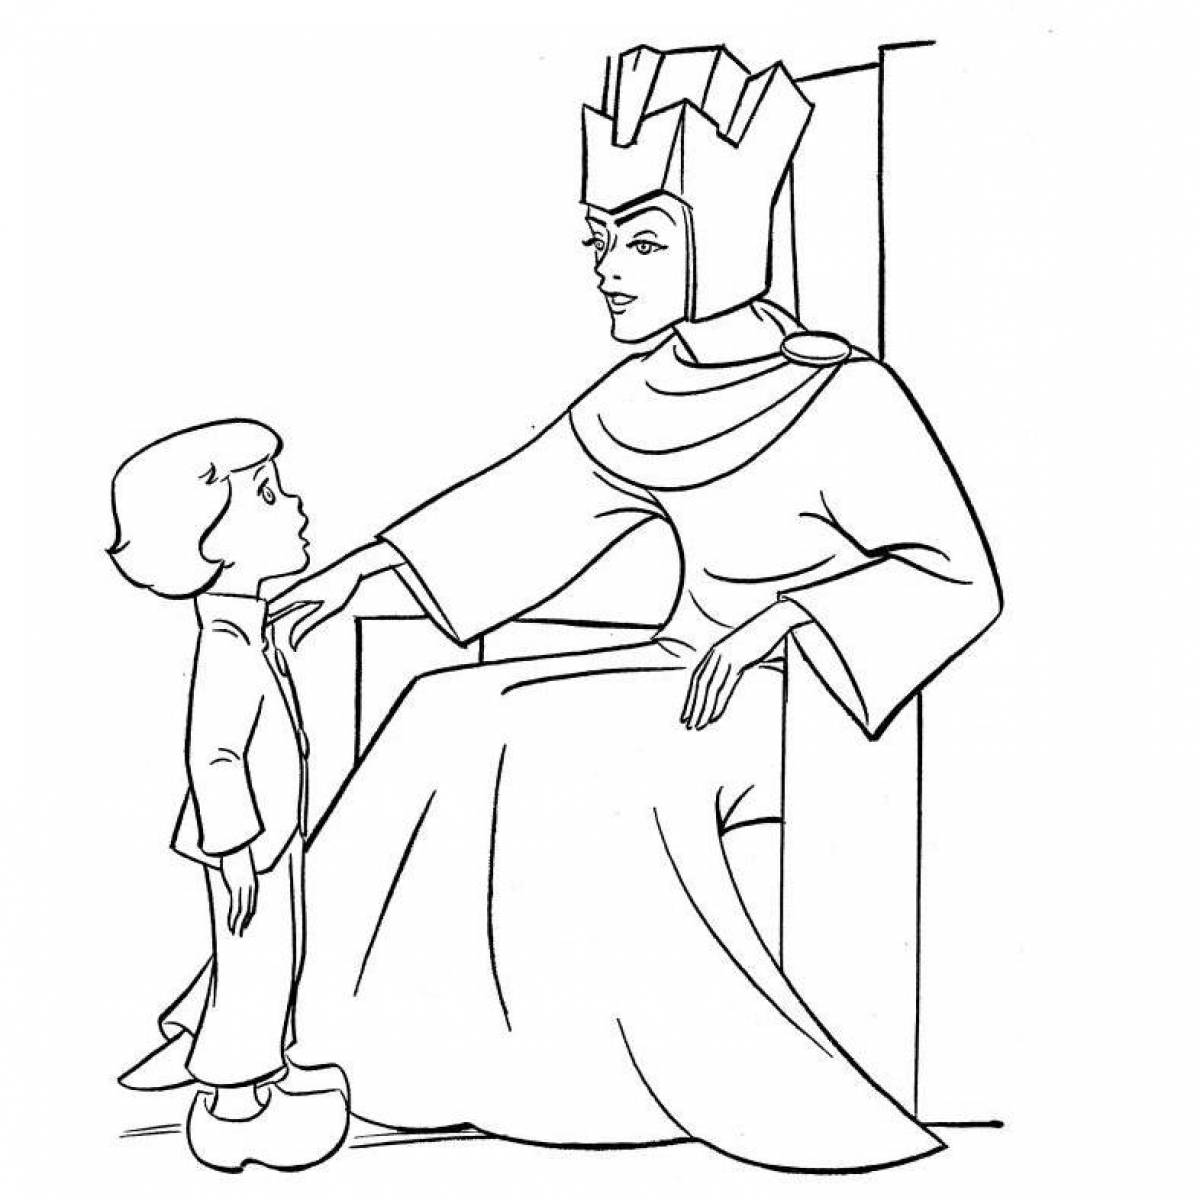 Нарисовать иллюстрацию к сказке снежная королева. Раскраска к сказке Снежная Королева 5 класс.